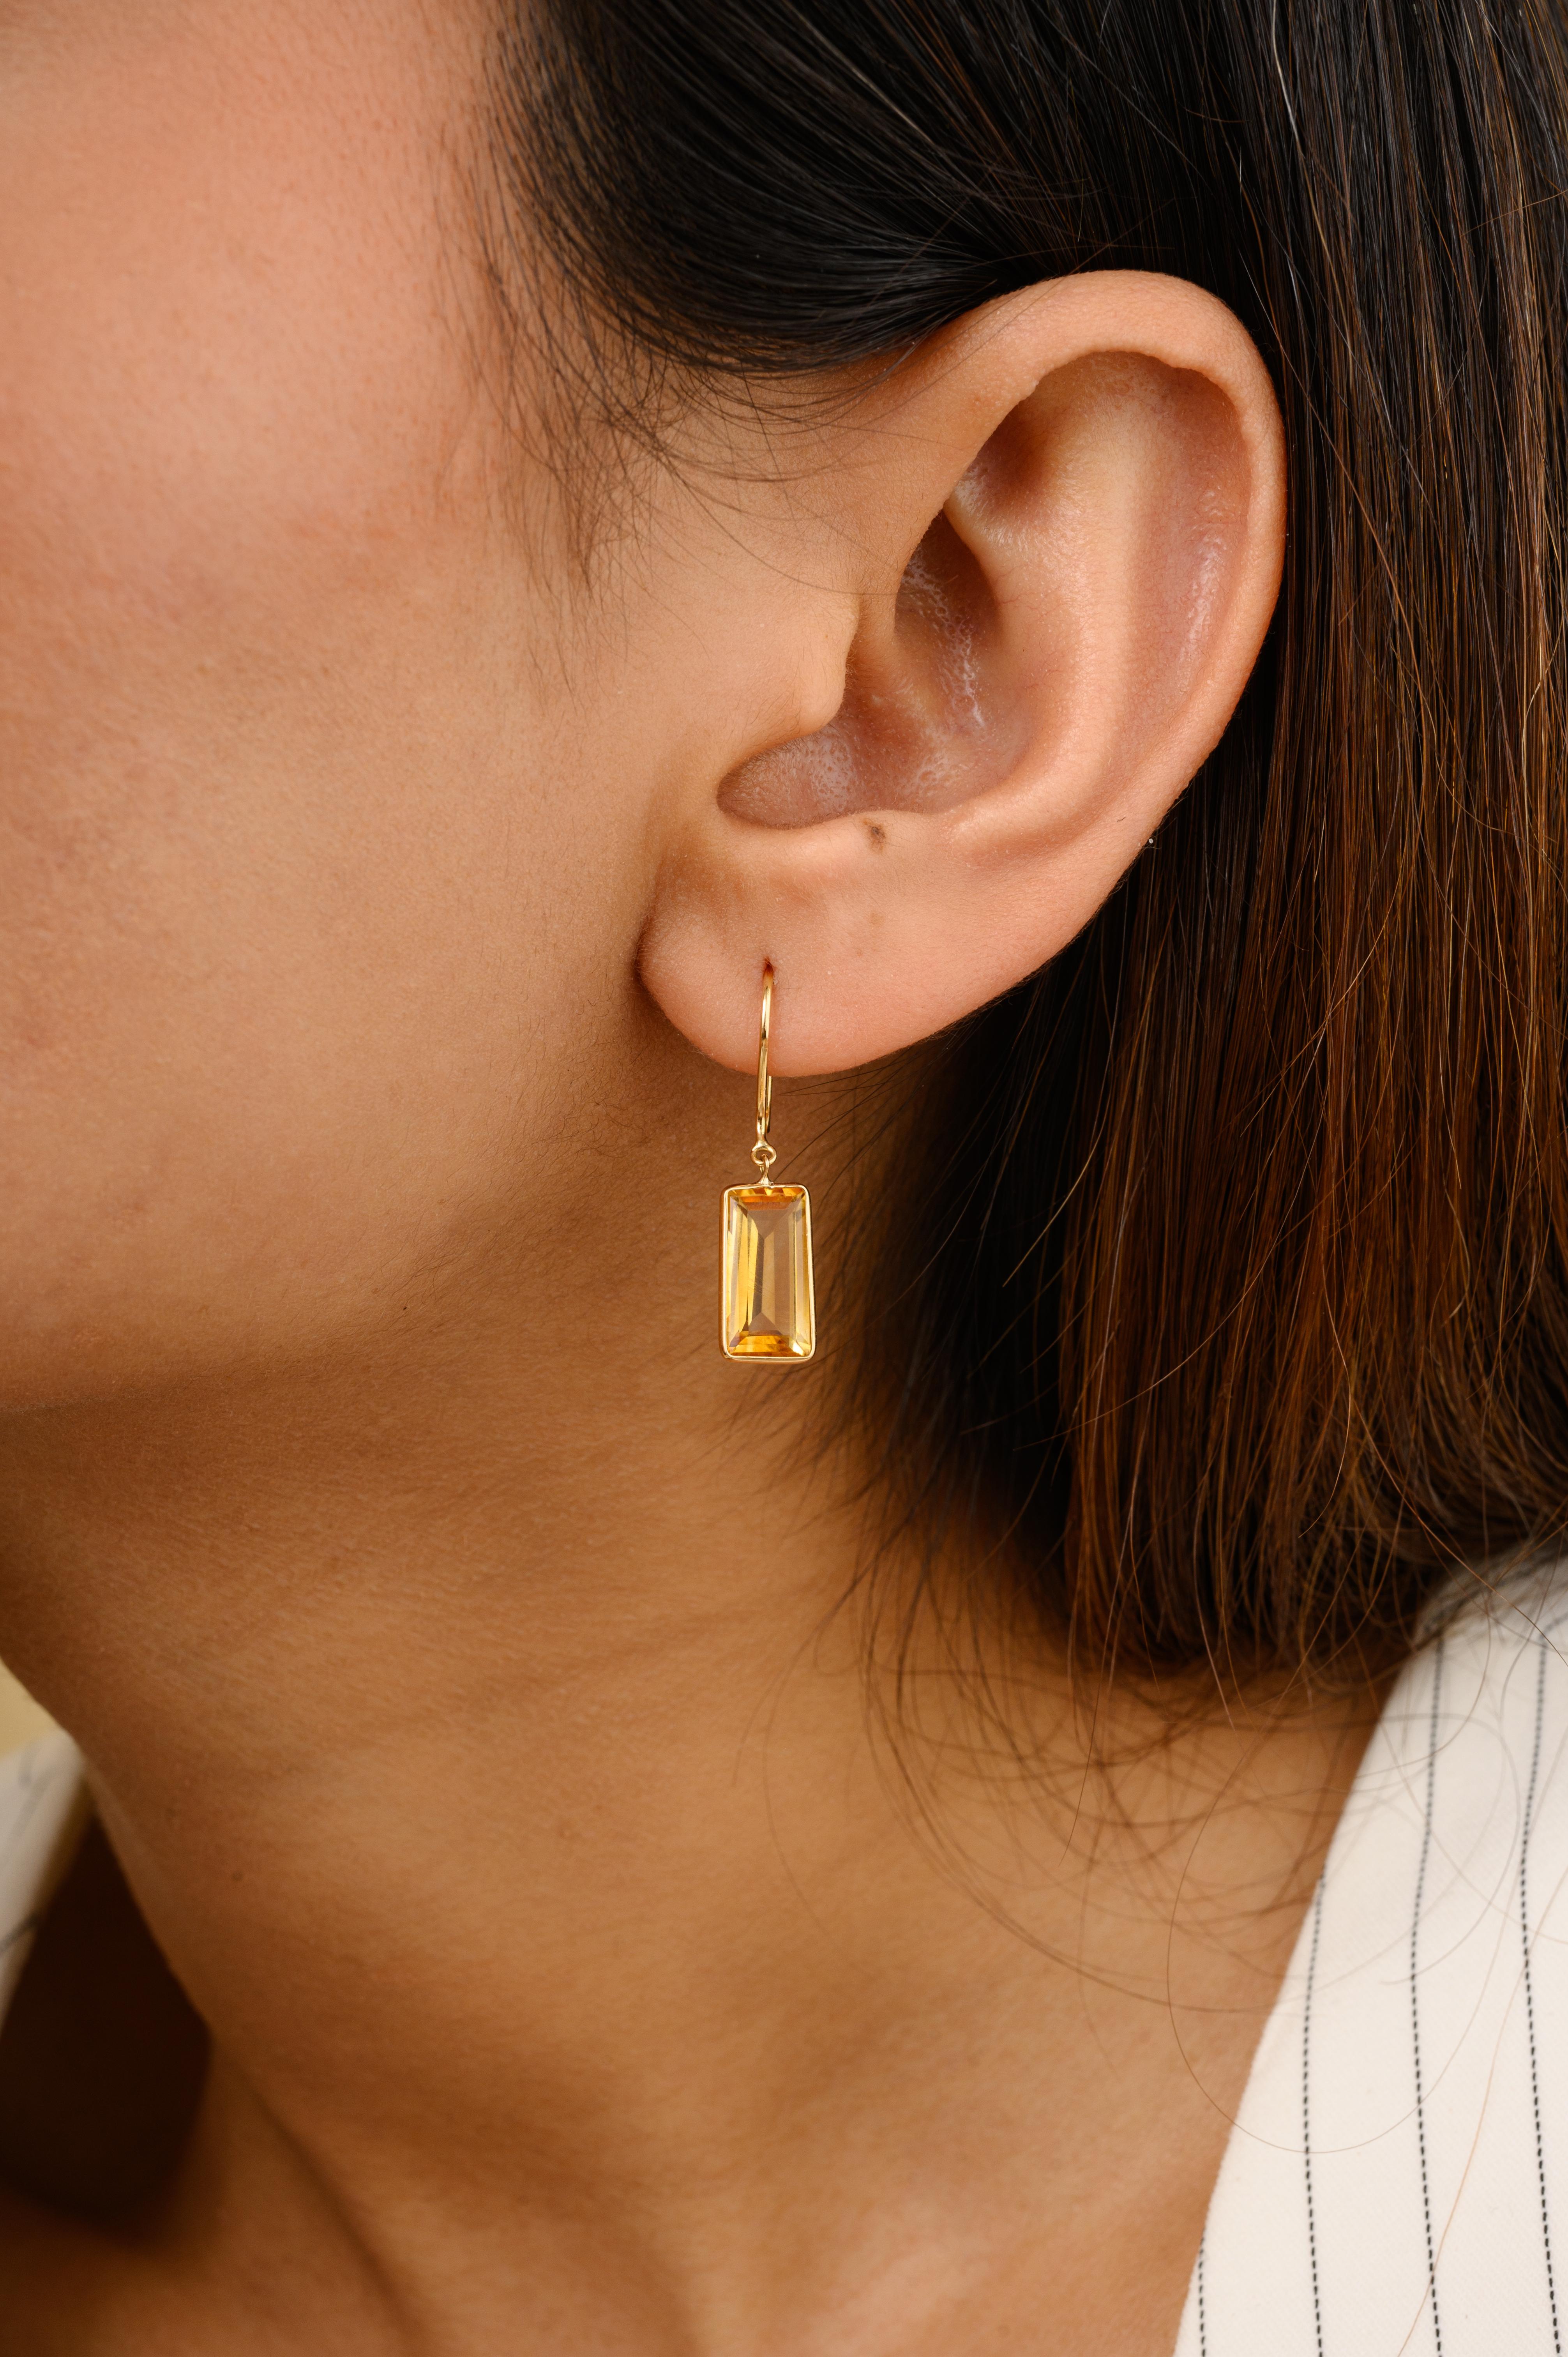 Baguette Citrin Everyday Drop Earrings Geschenk für Mama in 18K Gold, um eine Aussage mit Ihrem Look zu machen. Sie brauchen Tropfenohrringe, um mit Ihrem Look ein Statement zu setzen. Diese Ohrringe mit einem Citrin im Baguetteschliff sorgen für